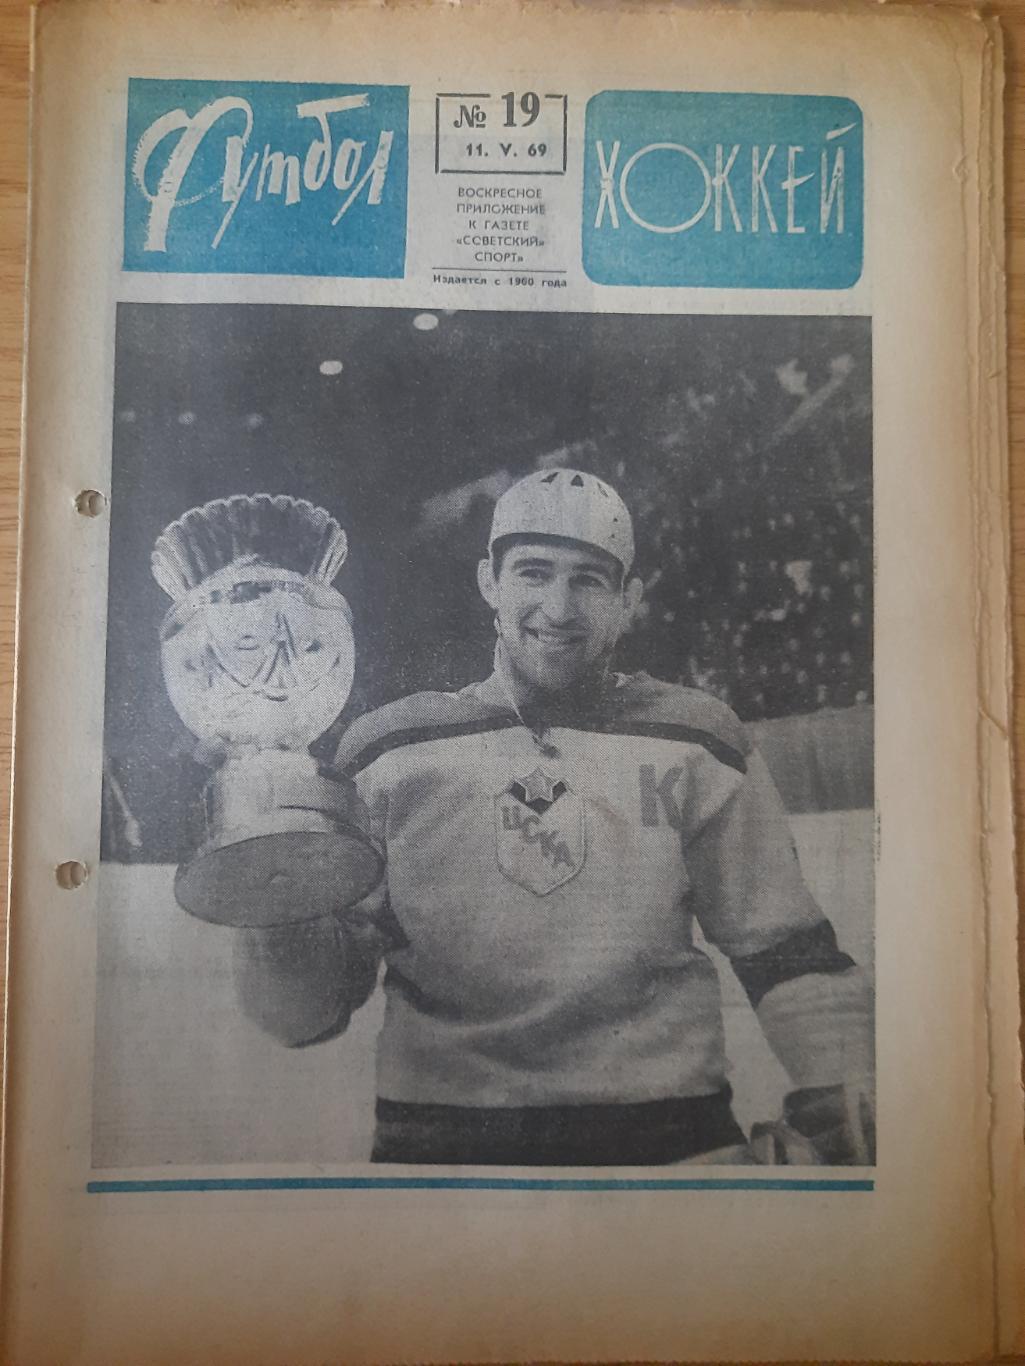 еженедельник футбол-хоккей #19, 1969.